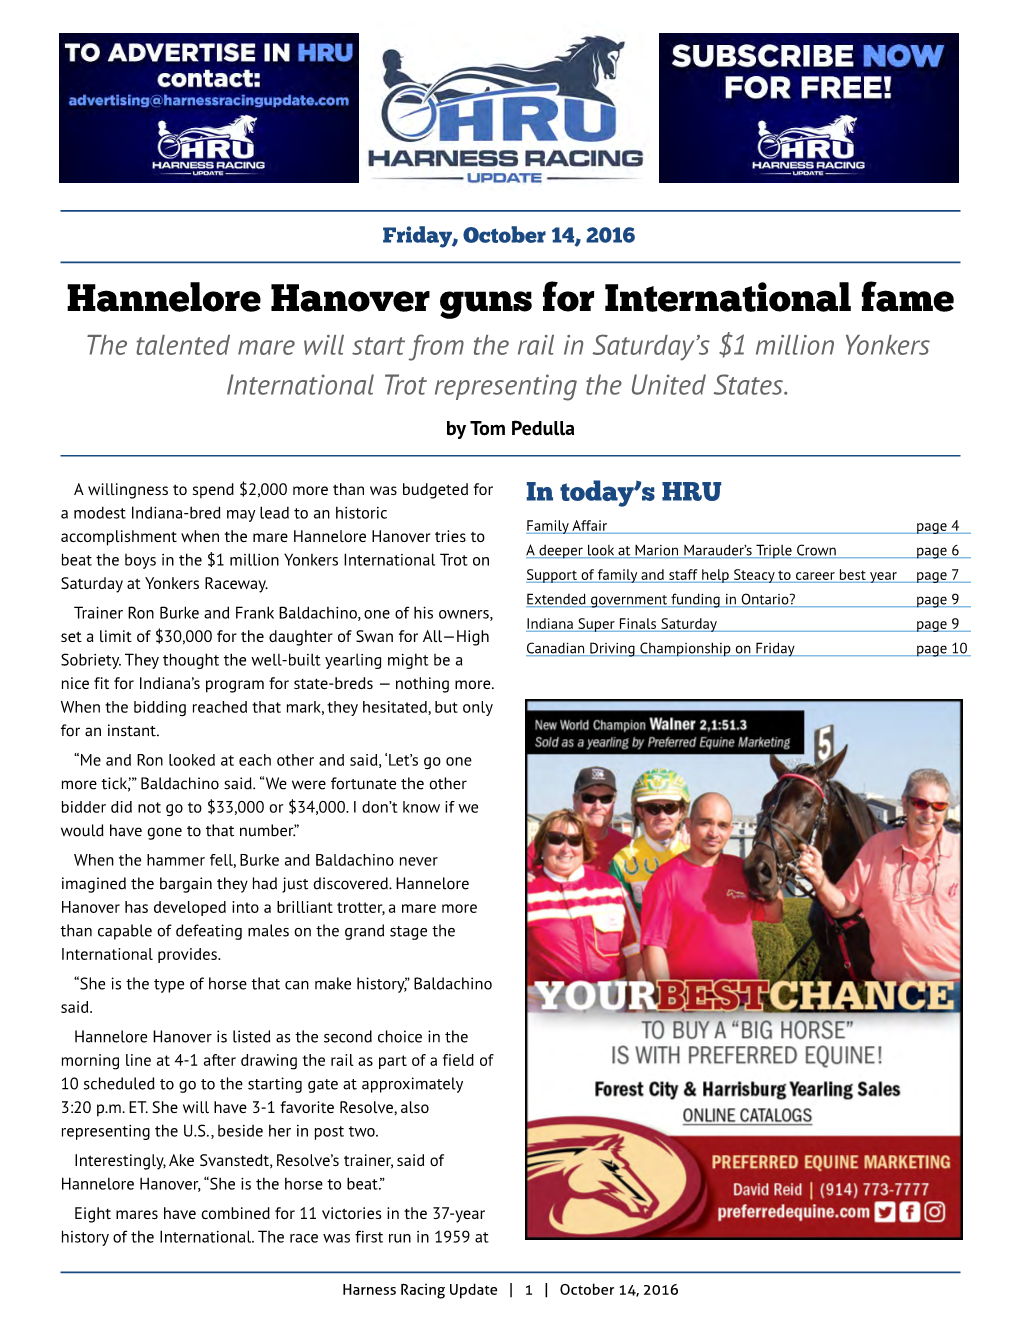 Hannelore Hanover Guns for International Fame